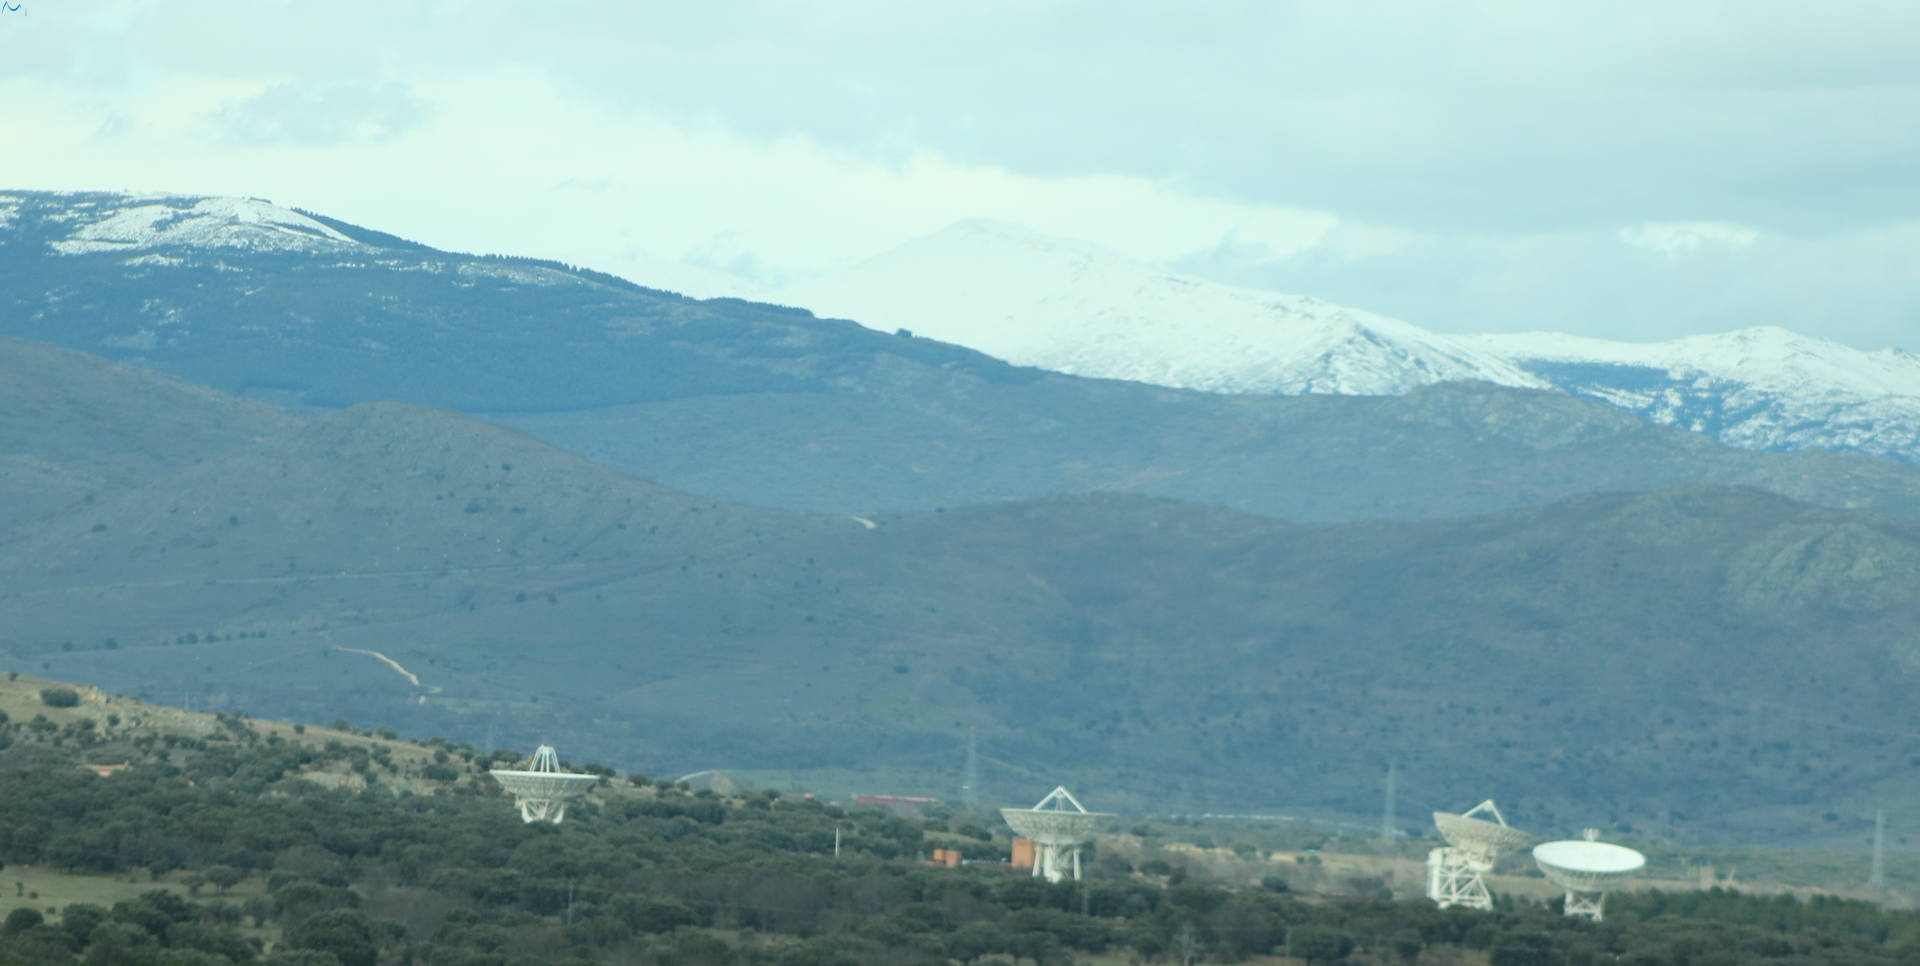 Montañas nevadas y radiotelescopios